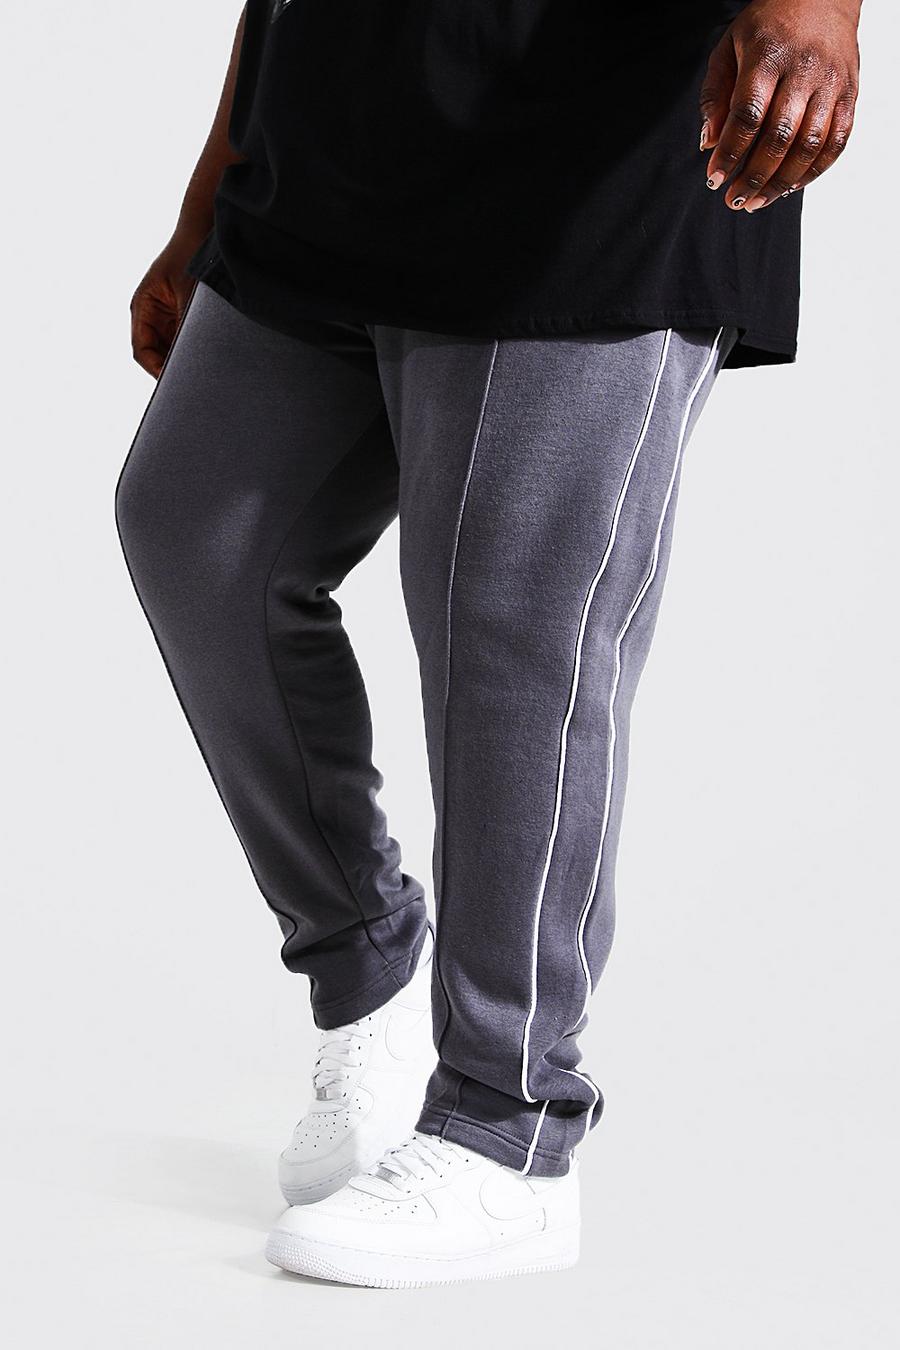 Pantaloni tuta Plus Size Skinny Fit  con cordoncino, Charcoal grigio